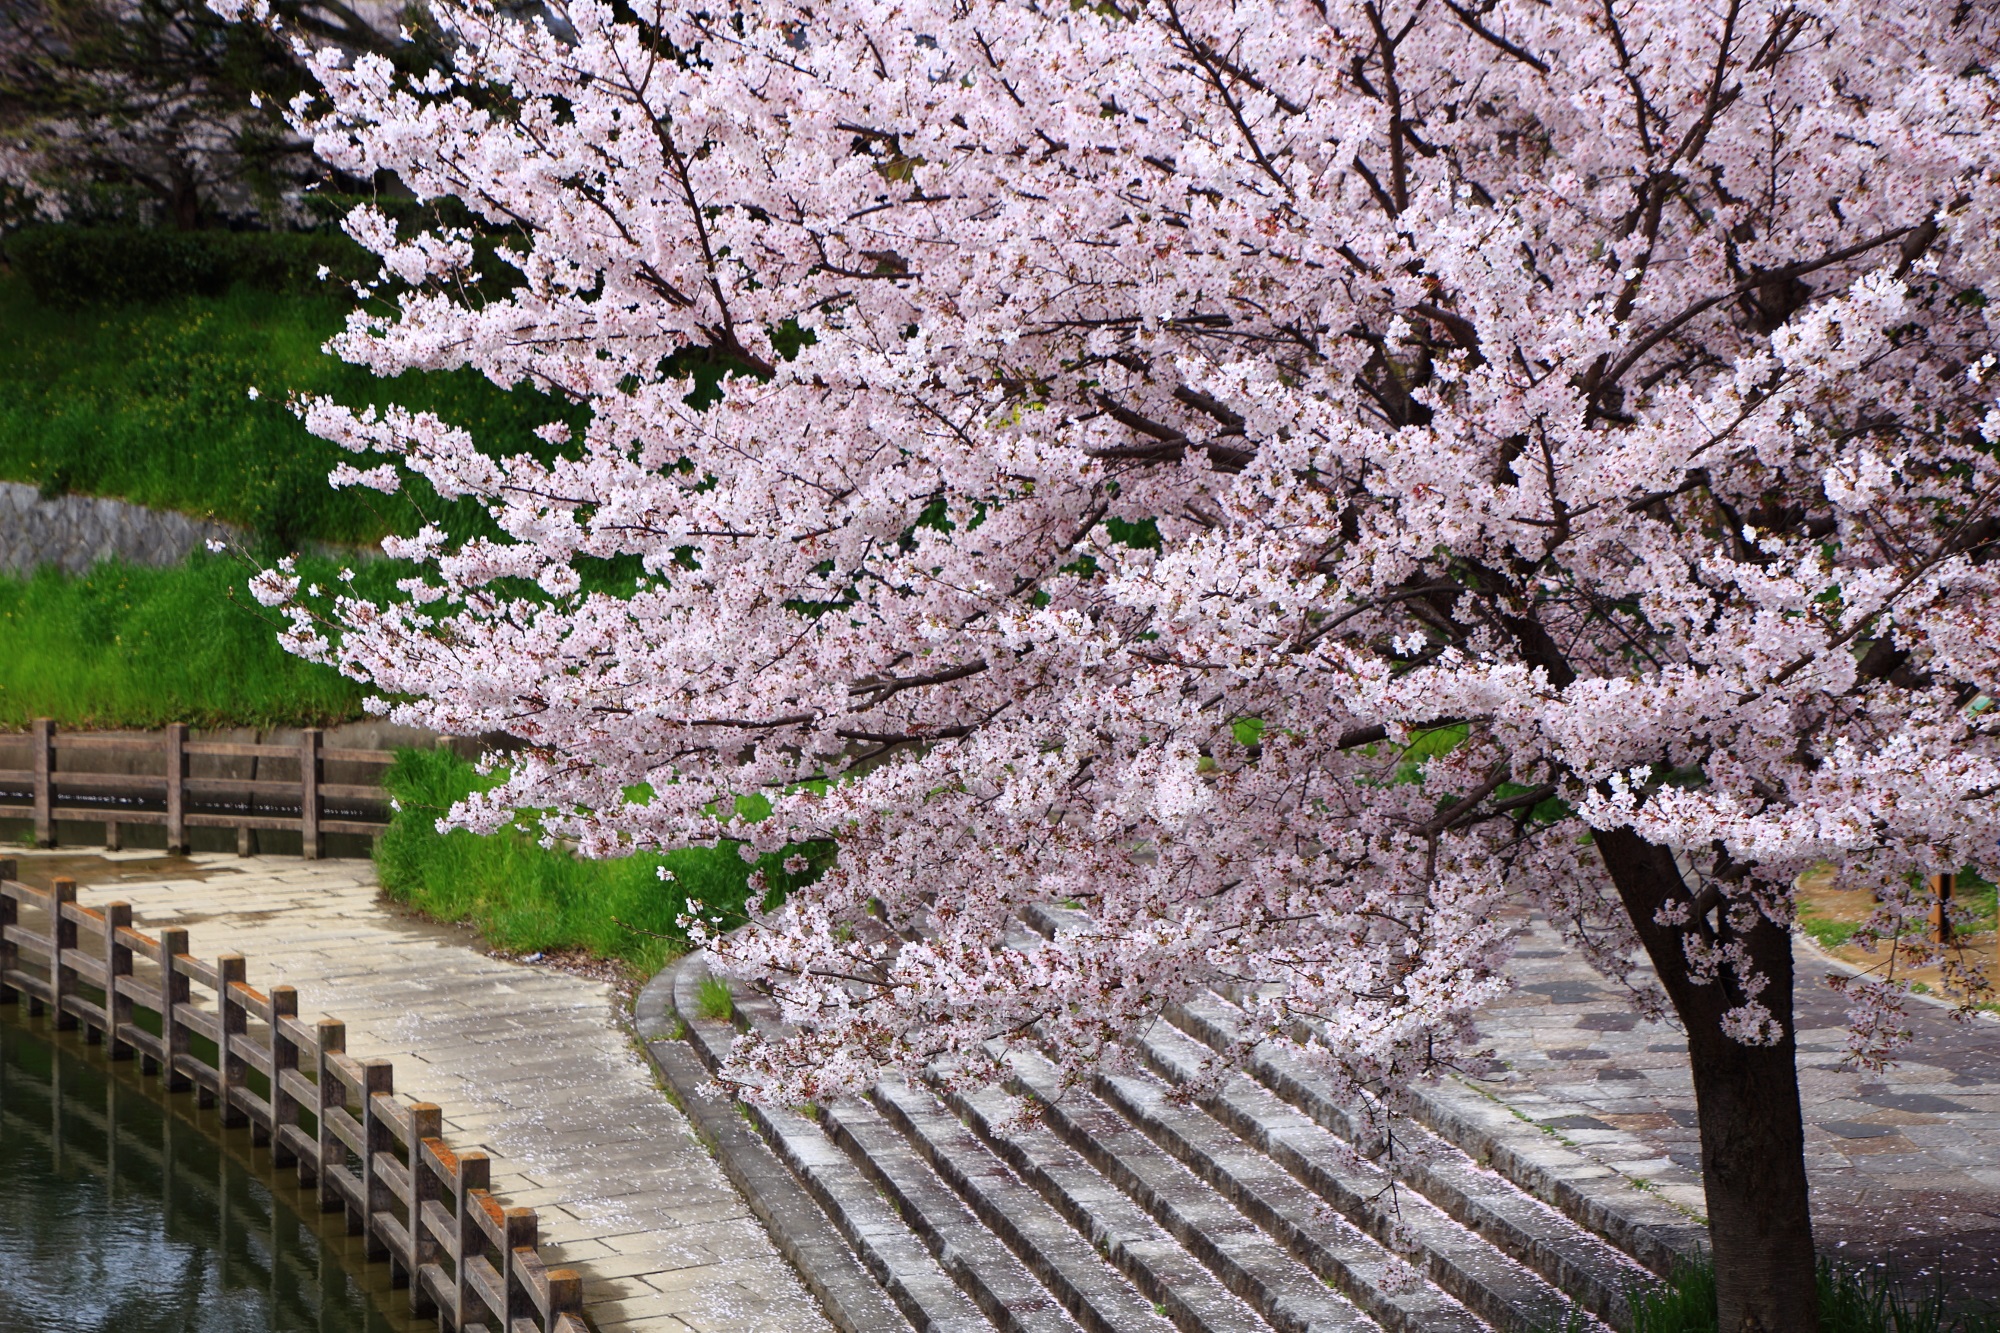 伏見であい橋から眺めた溢れんばかりの桜